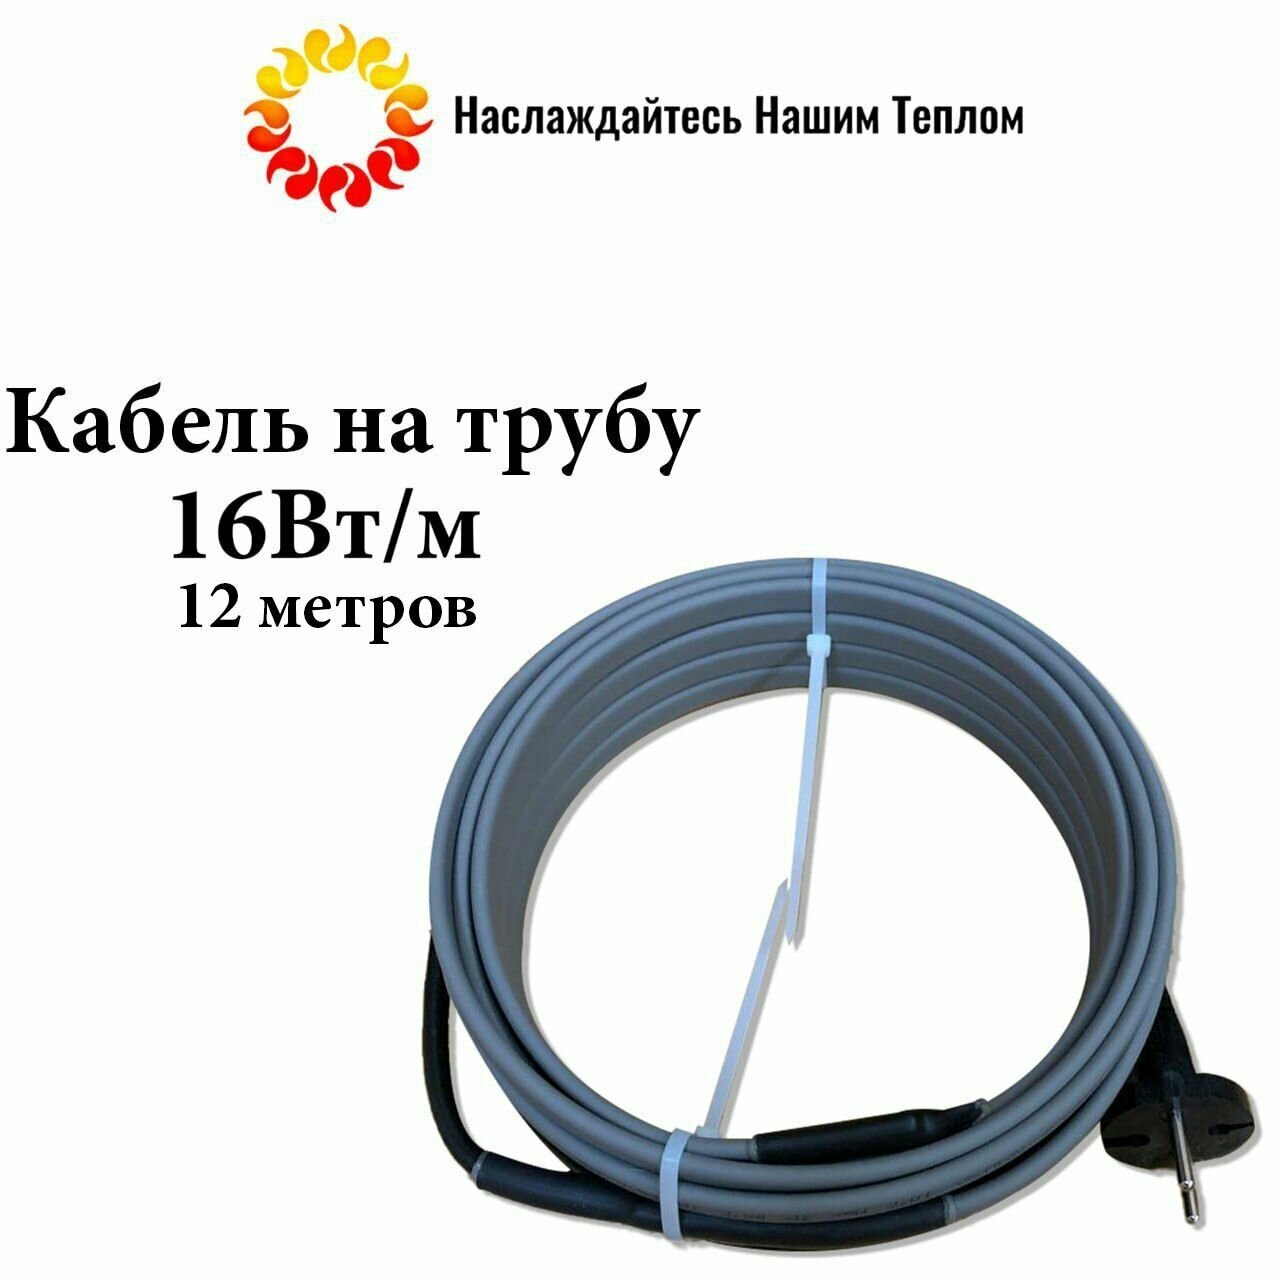 Саморегулирующийся греющий кабель на трубу (наружный) для водопровода и канализации, 16 Вт/м, длина 12 метров